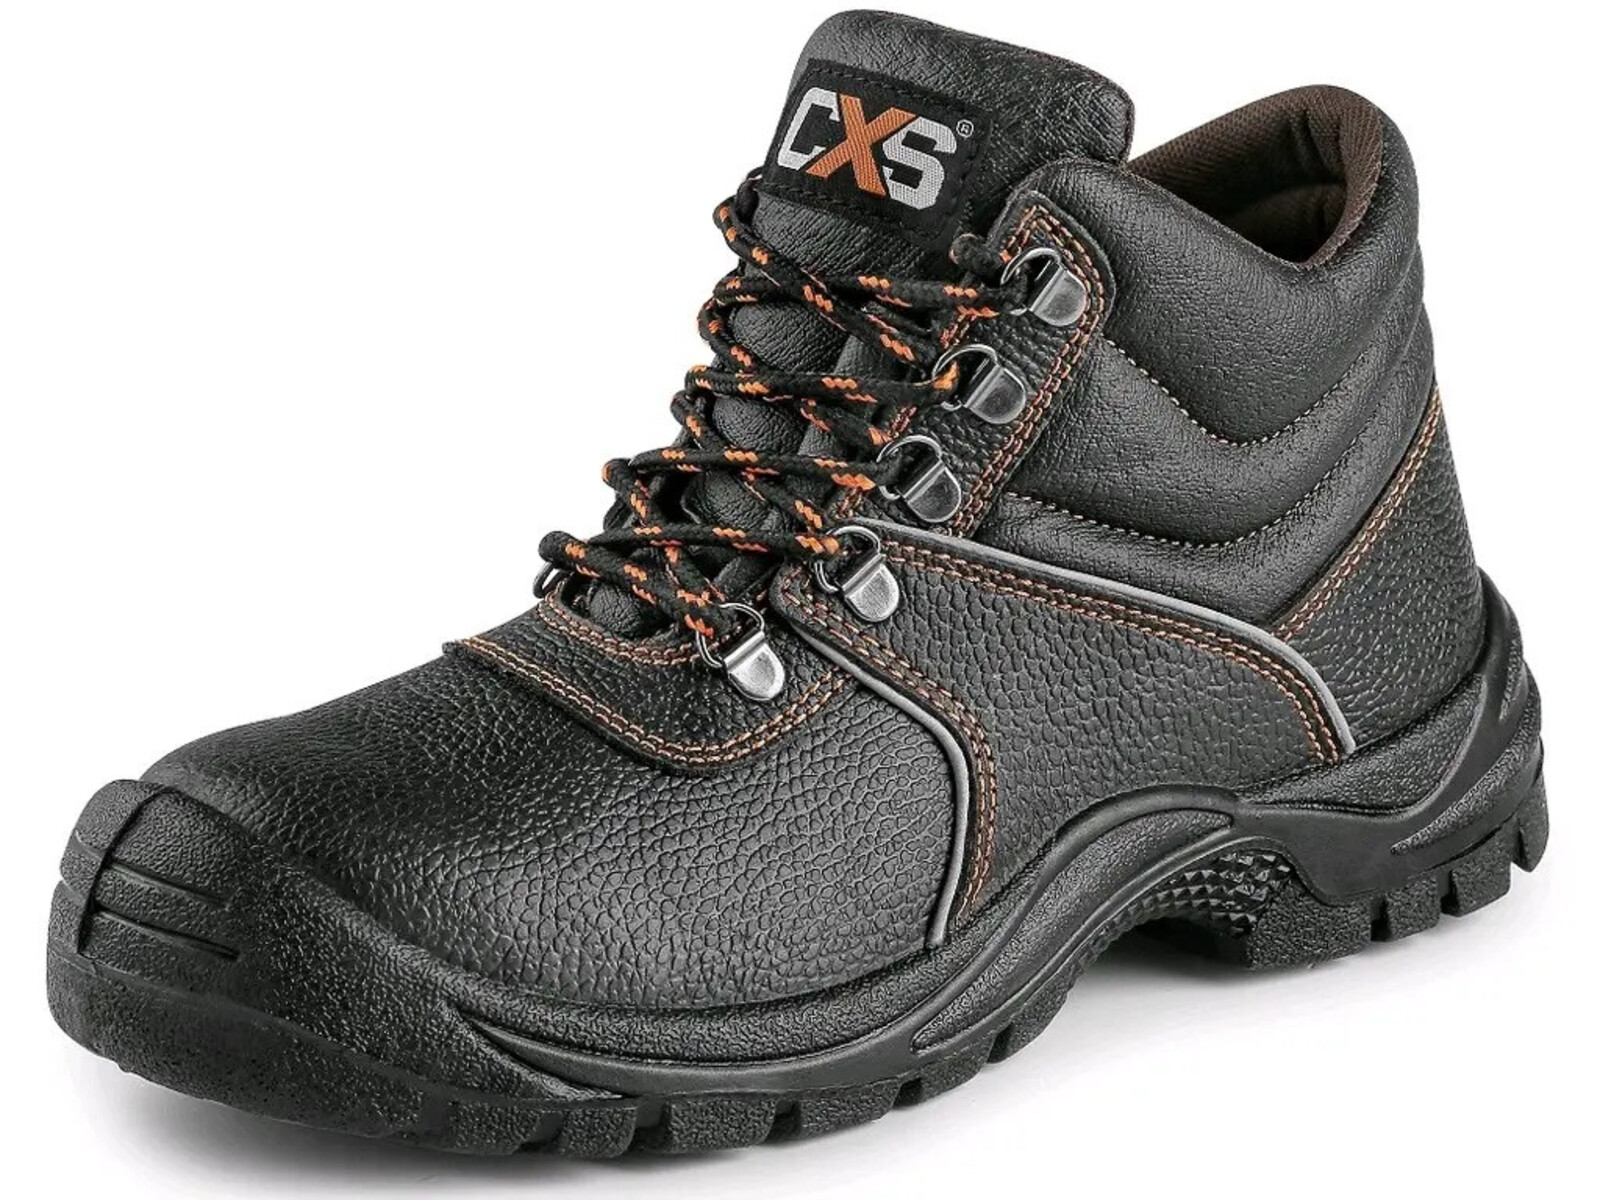 Bezpečnostná členková obuv CXS Stone Marble S2 SRC - veľkosť: 35, farba: čierna/oranžová